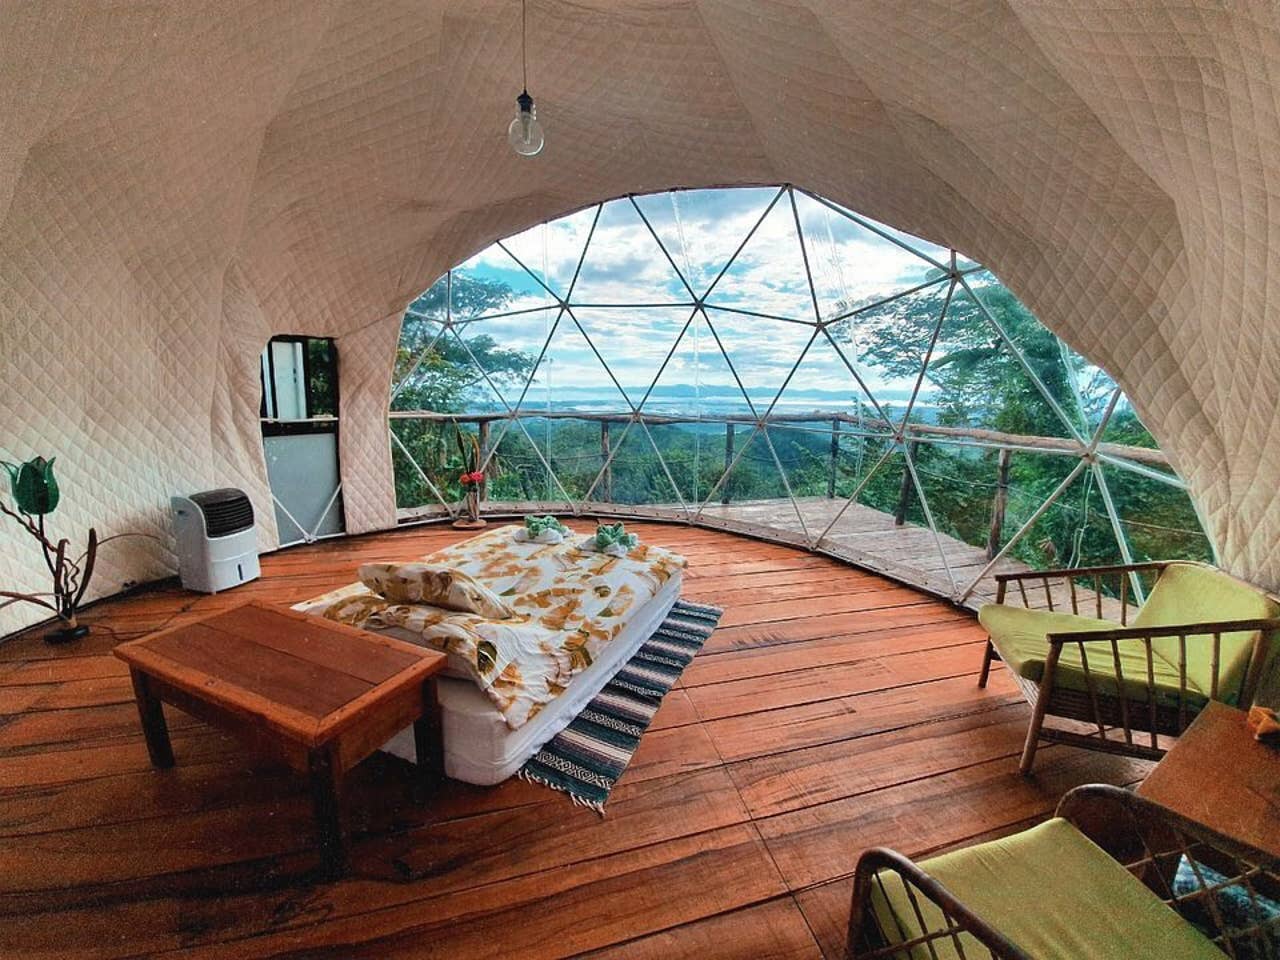 Jungle Dome Airbnbs in Costa Rica